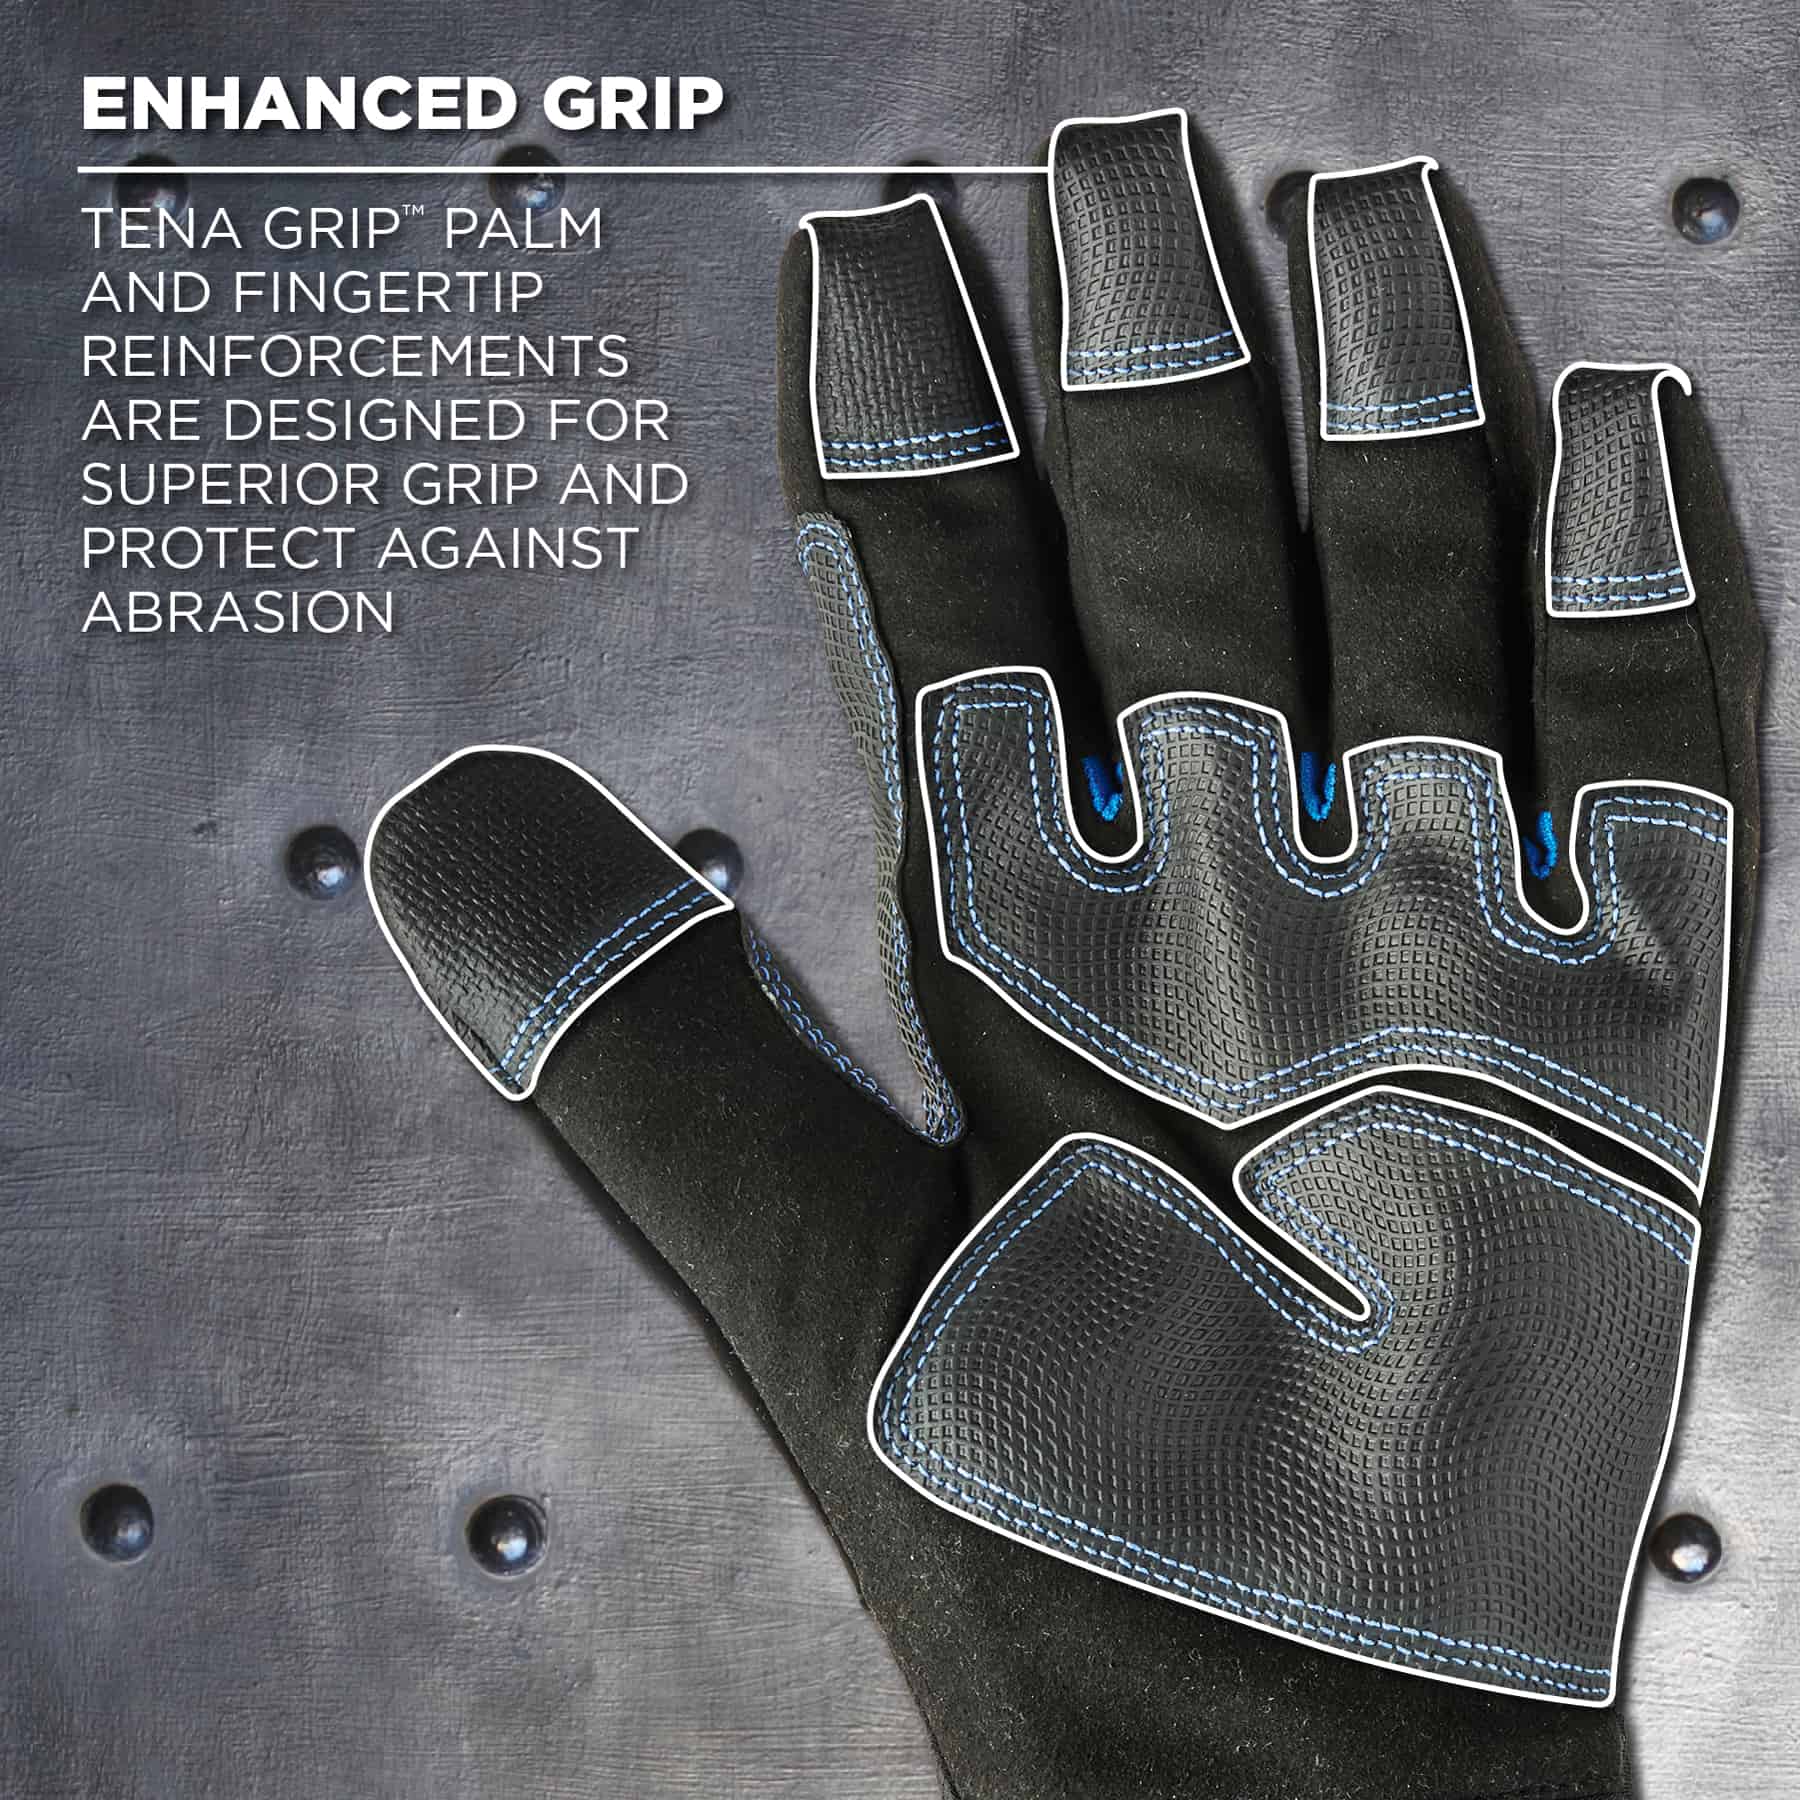 https://www.ergodyne.com/sites/default/files/product-images/17382-818wp-thermal-waterproof-winter-work-gloves-black-enhanced-grip.jpg